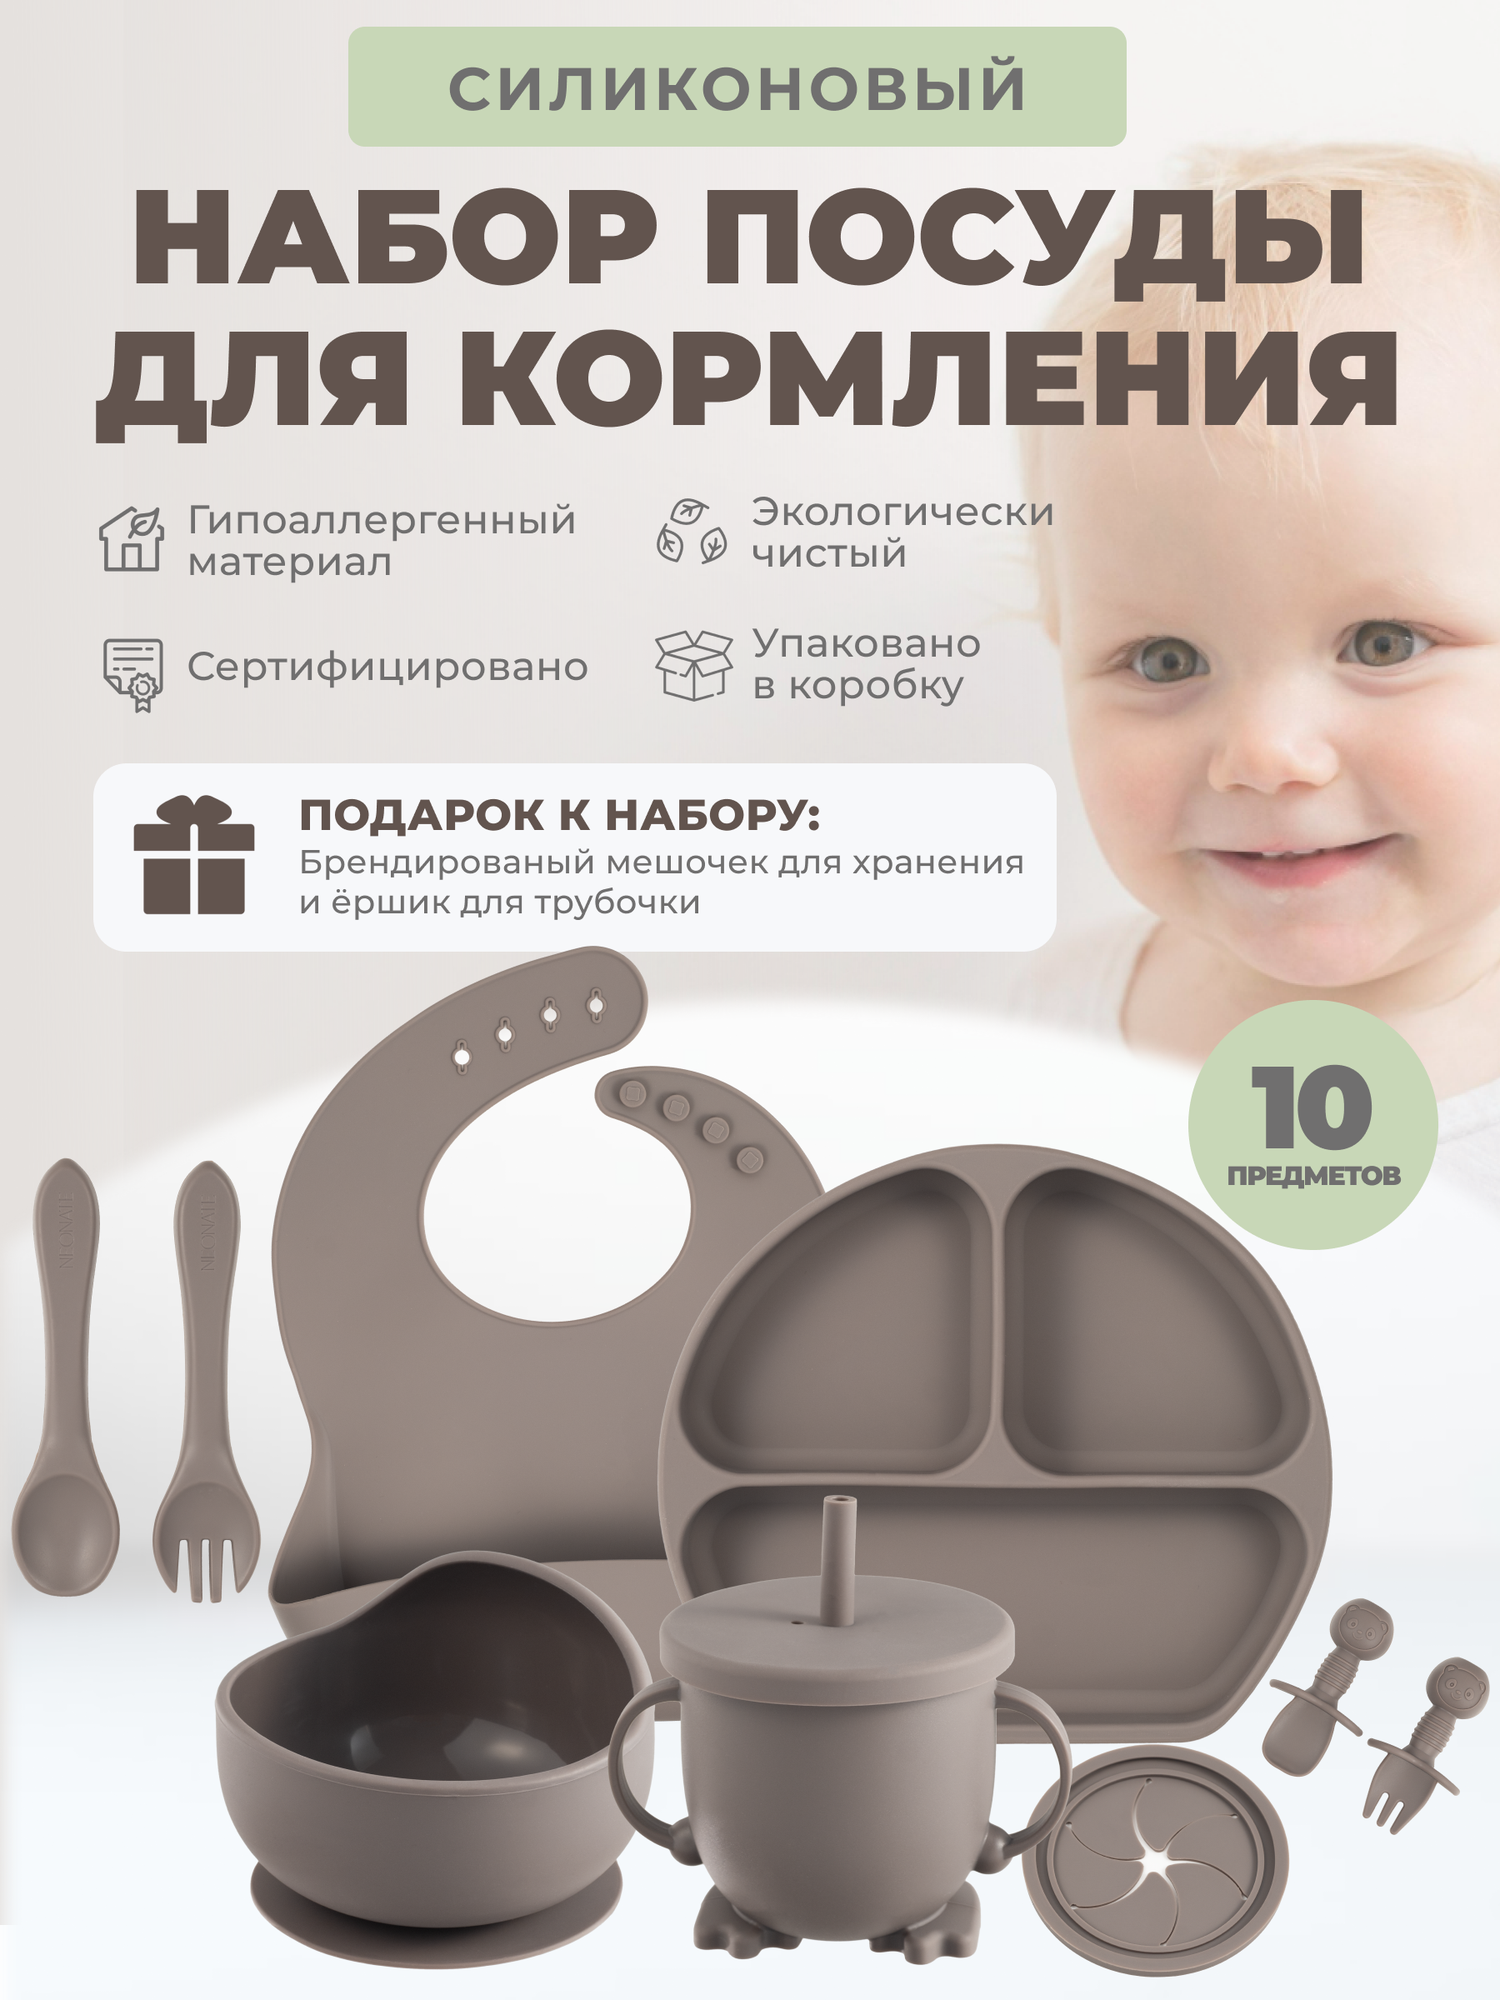 Детский силиконовый набор посуды для кормления детишек 10 предметов